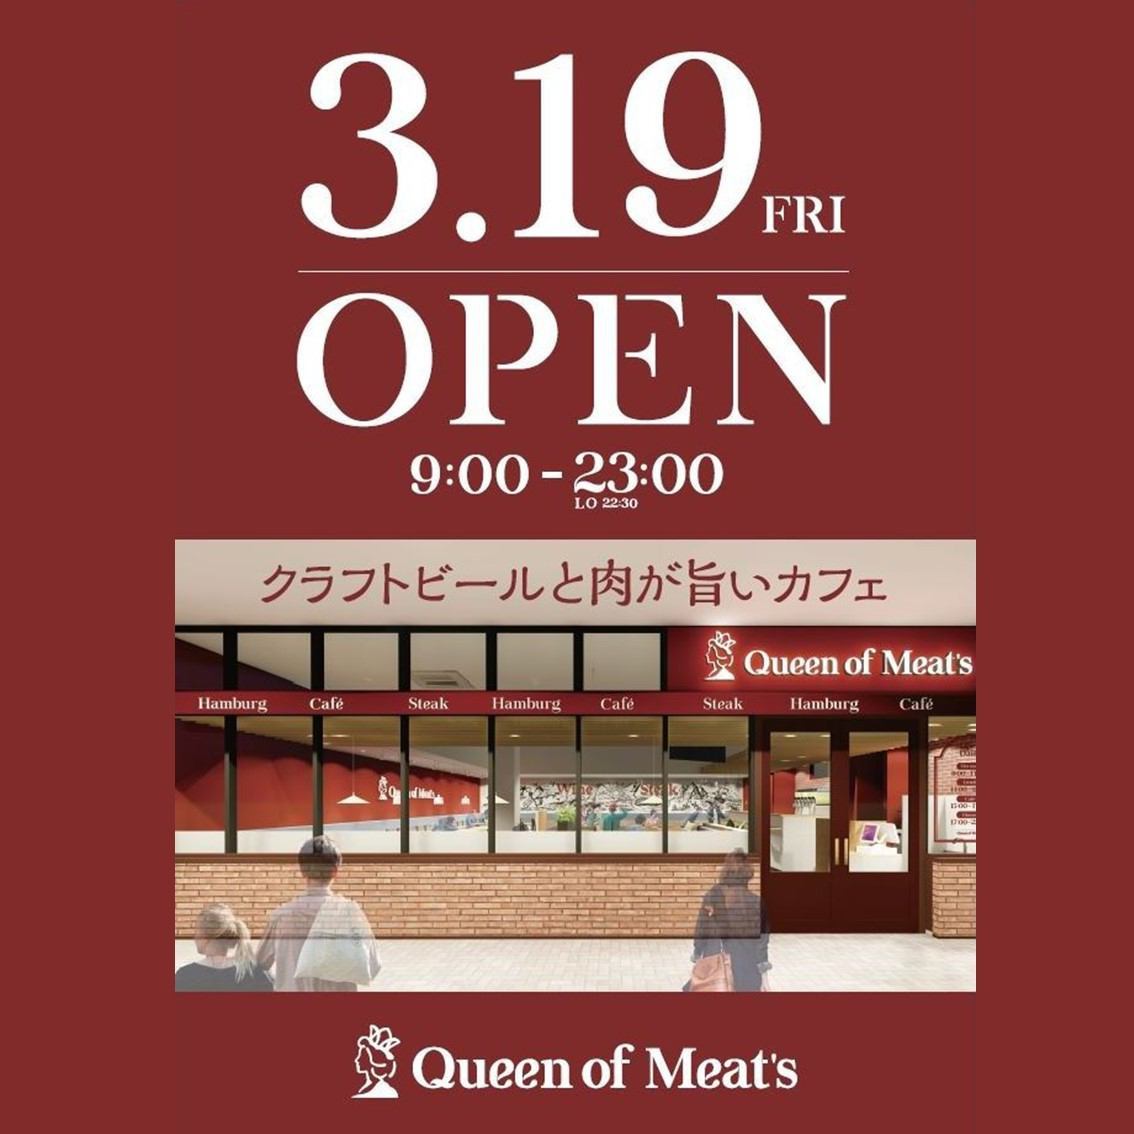 <3/19金OPEN>いつでもどこまでも美味しいお肉!!Queen of Meat's